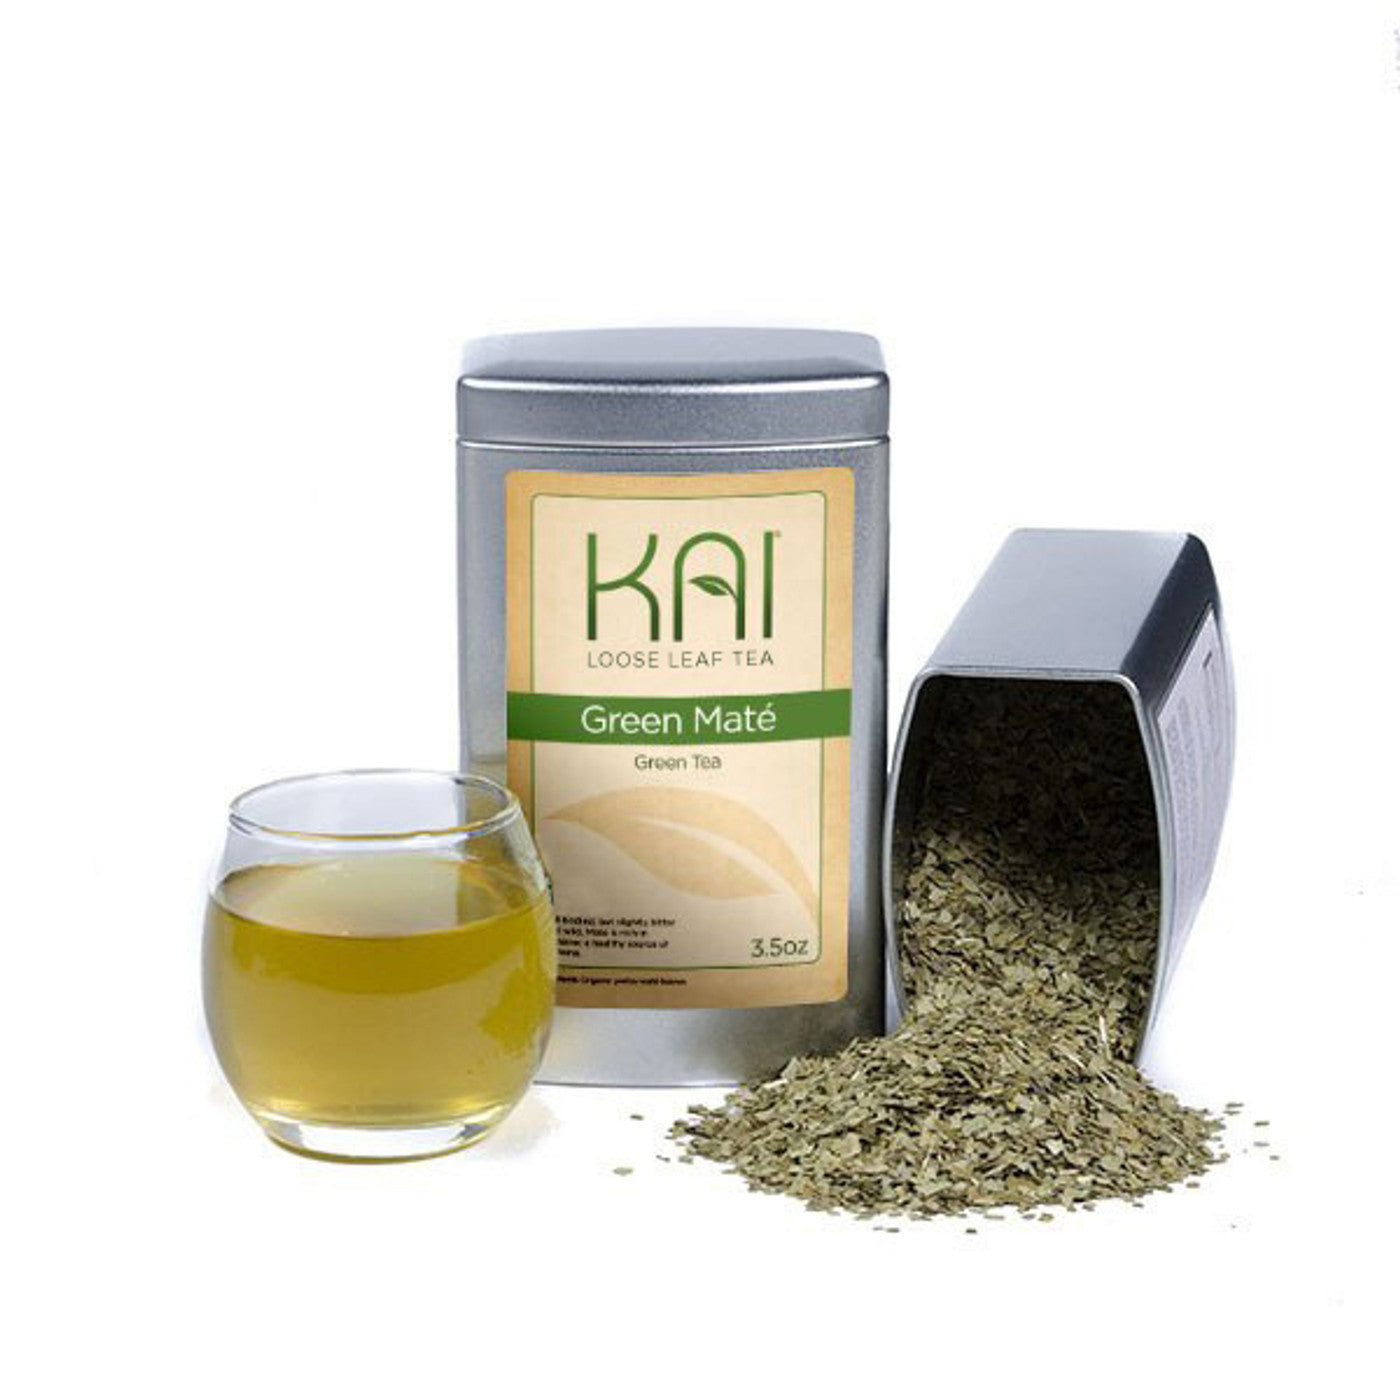 Kai Loose Leaf Tea - Green Mate